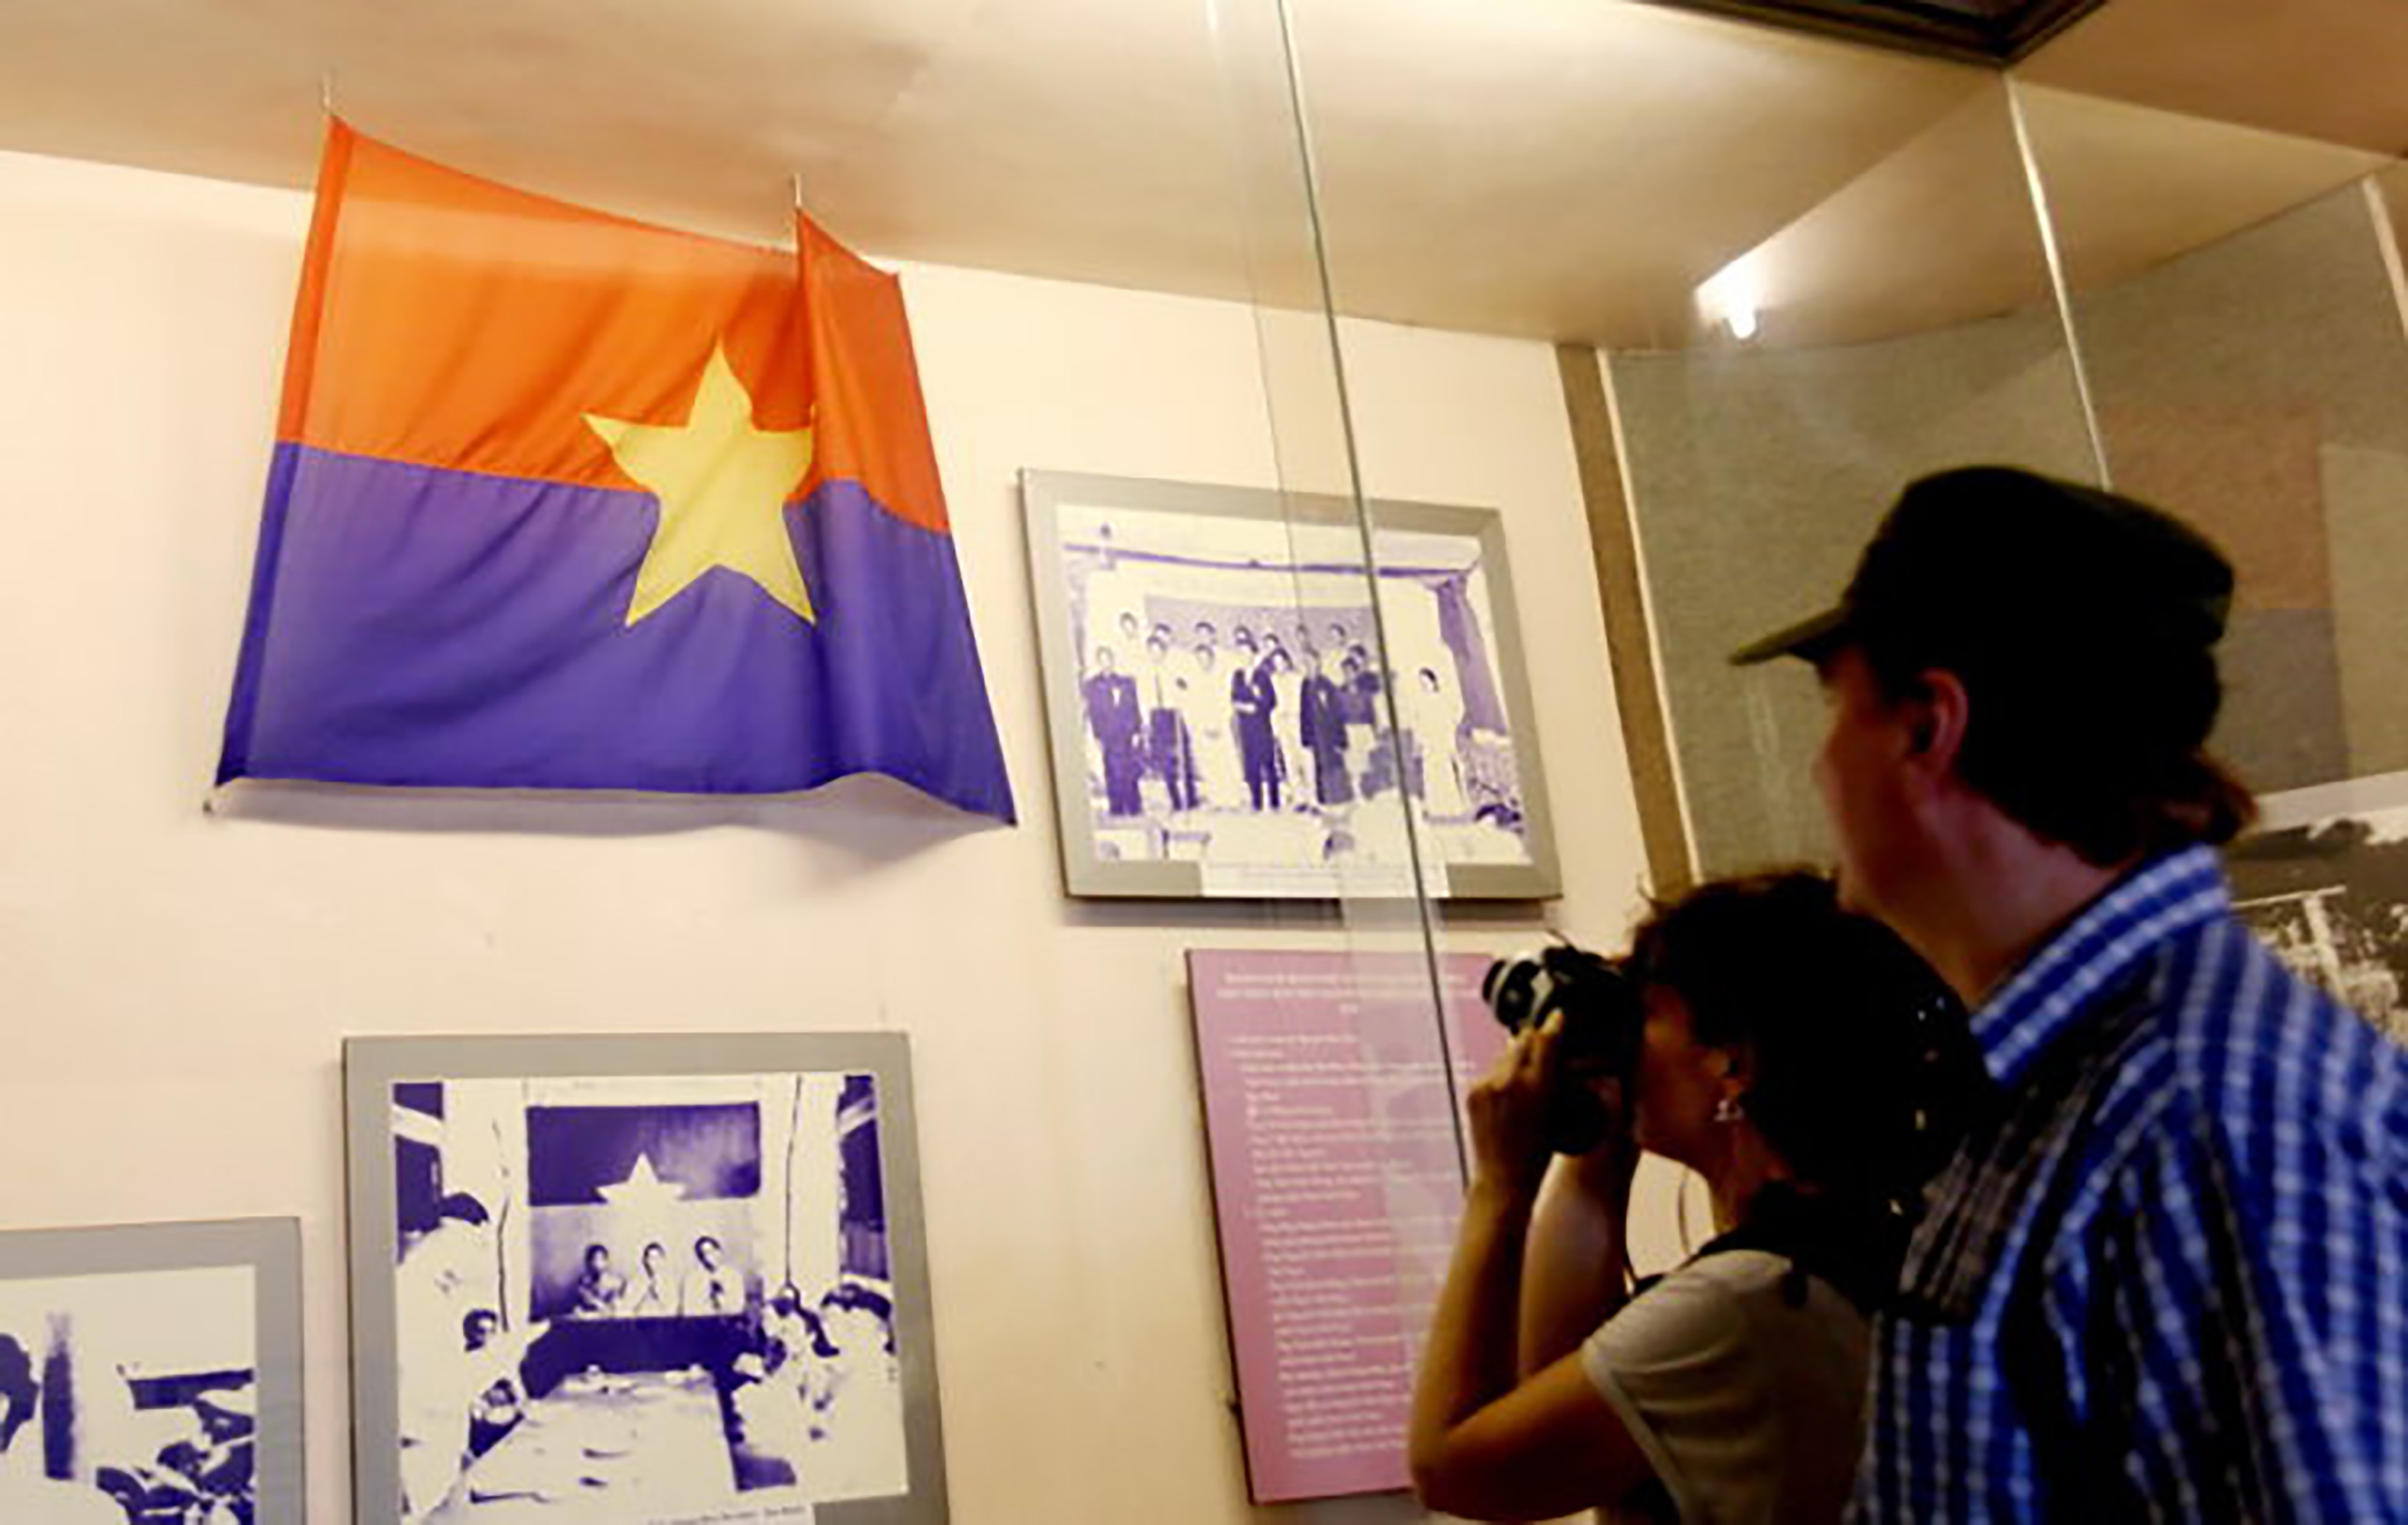 Mặt trận Dân tộc: Mặt trận Dân tộc là đại diện cho những cương vị dân chủ của Việt Nam, đóng góp quan trọng vào sự nghiệp đấu tranh giành độc lập dân tộc và phát triển kinh tế - xã hội. Hãy cùng xem các hình ảnh về Mặt trận Dân tộc để tôn vinh những đóng góp khổng lồ của họ cho đất nước.